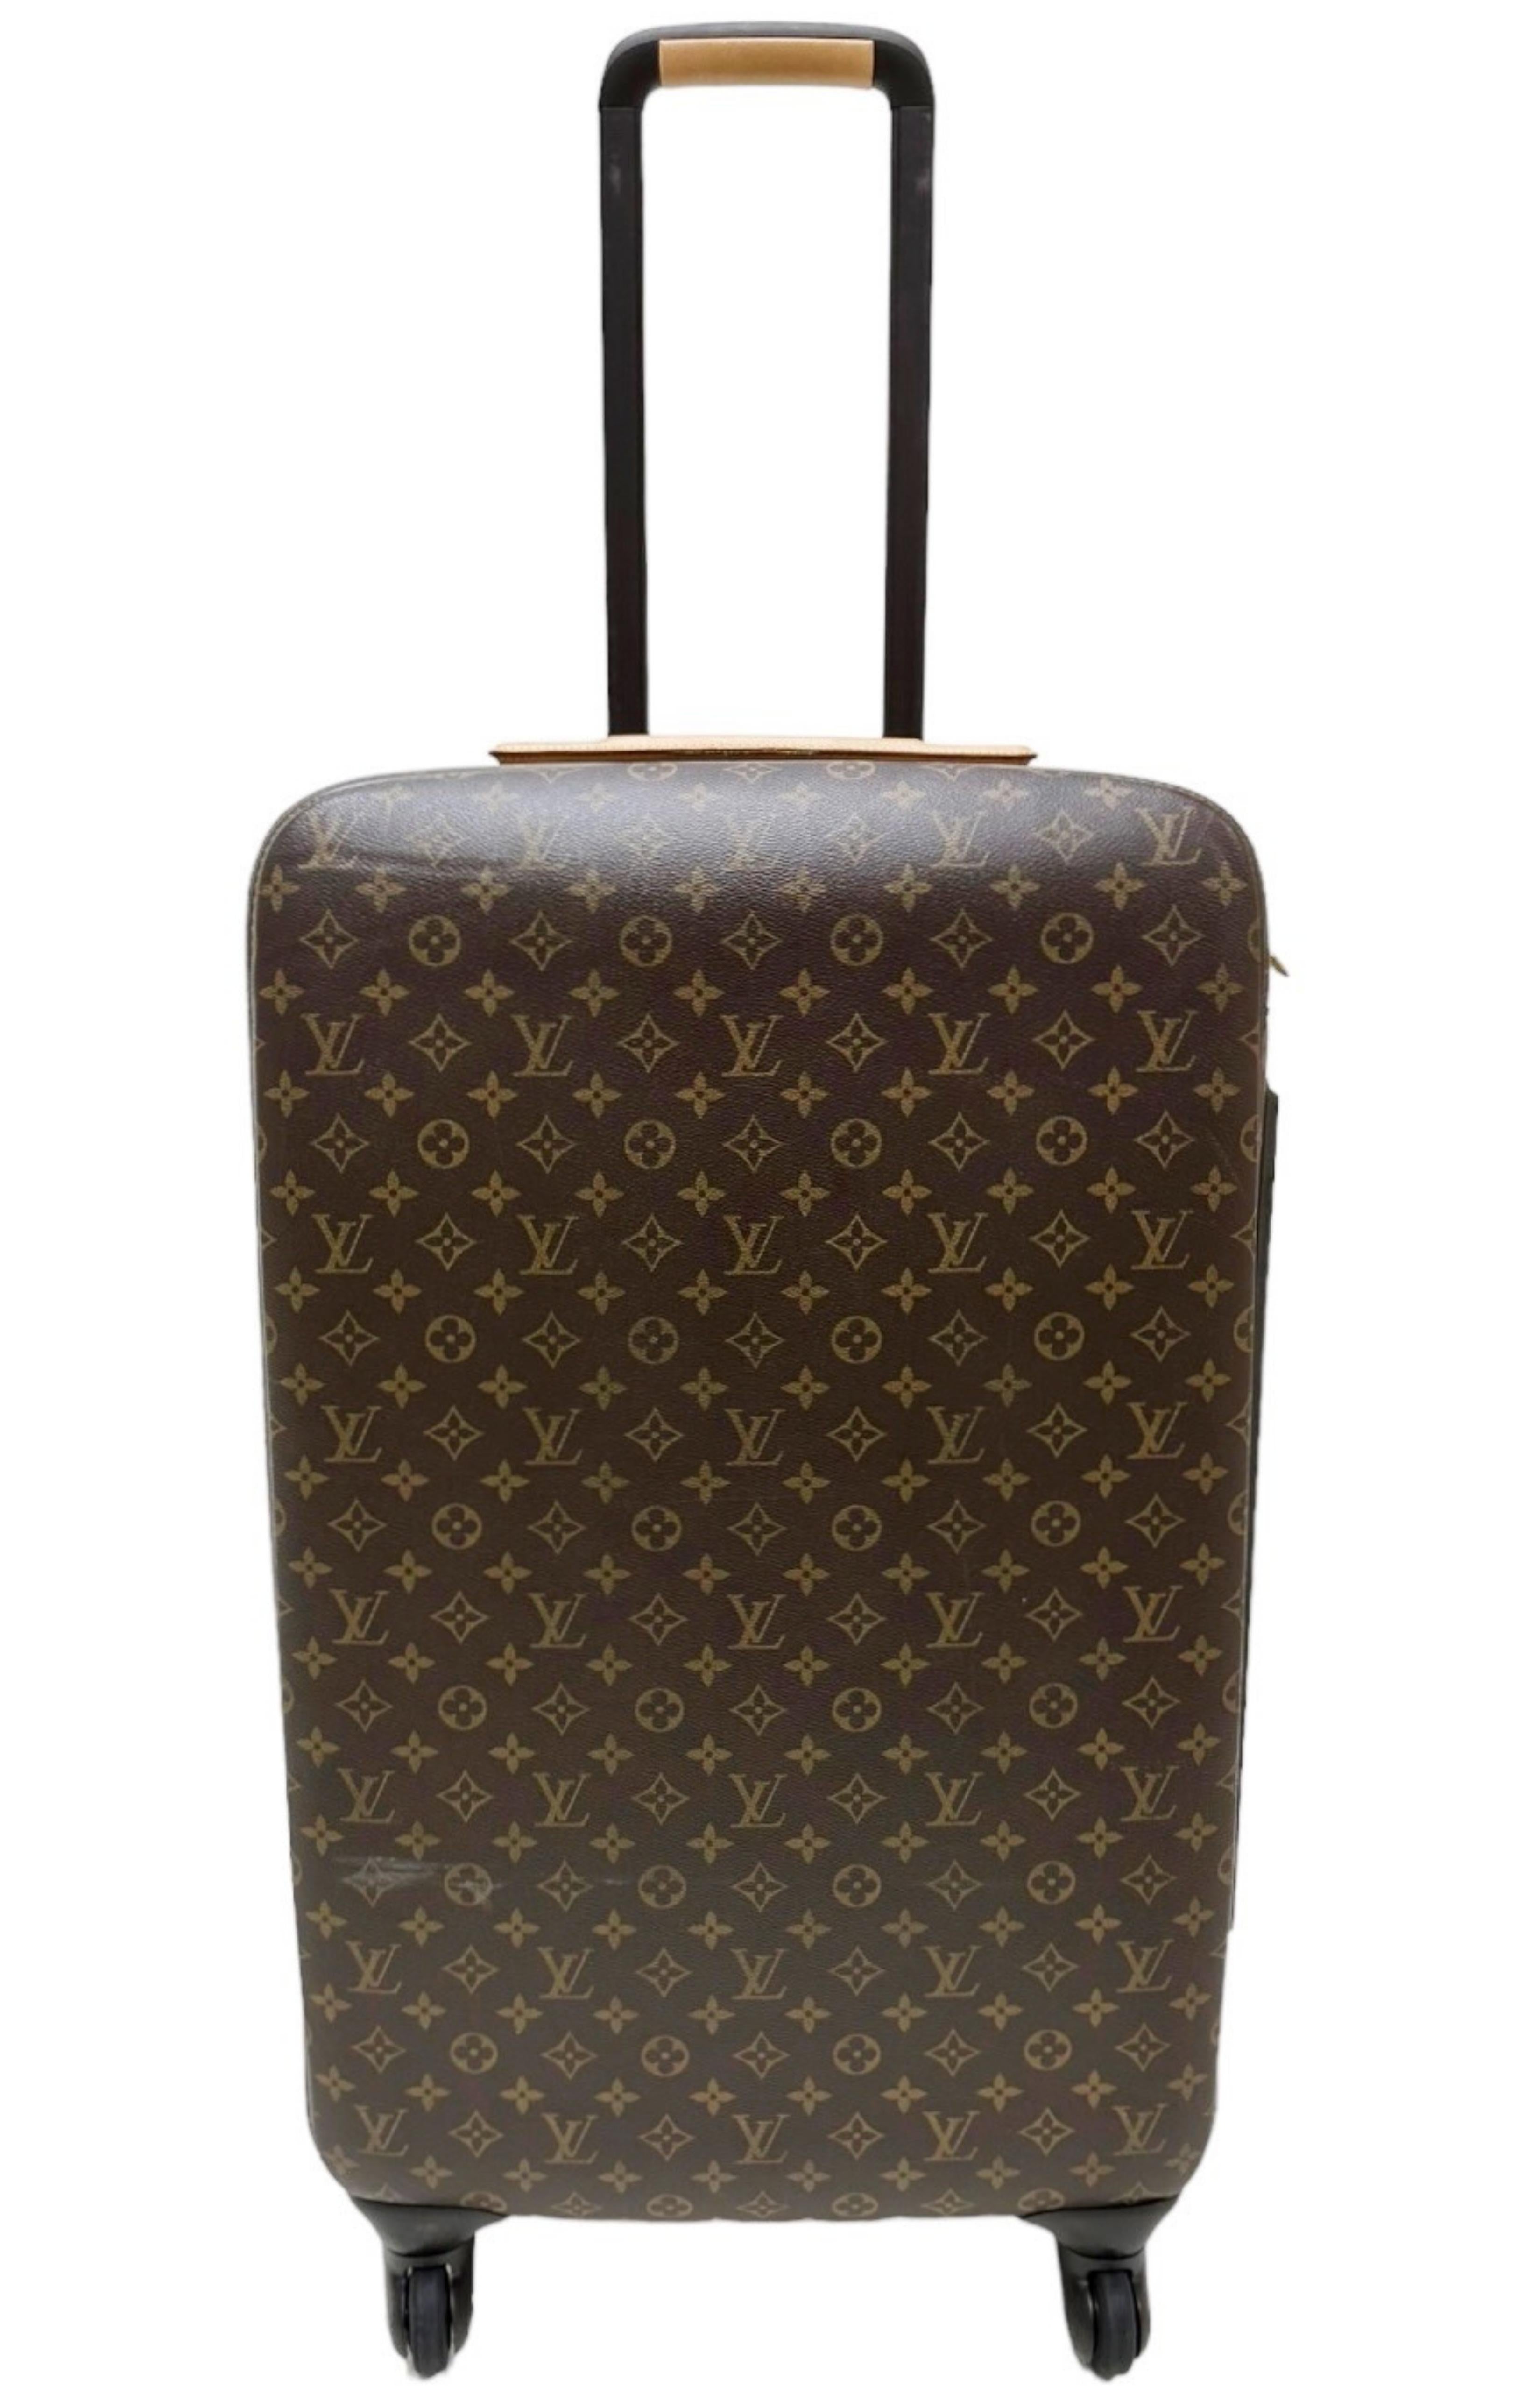 Louis Vuitton Luggage Sizes 